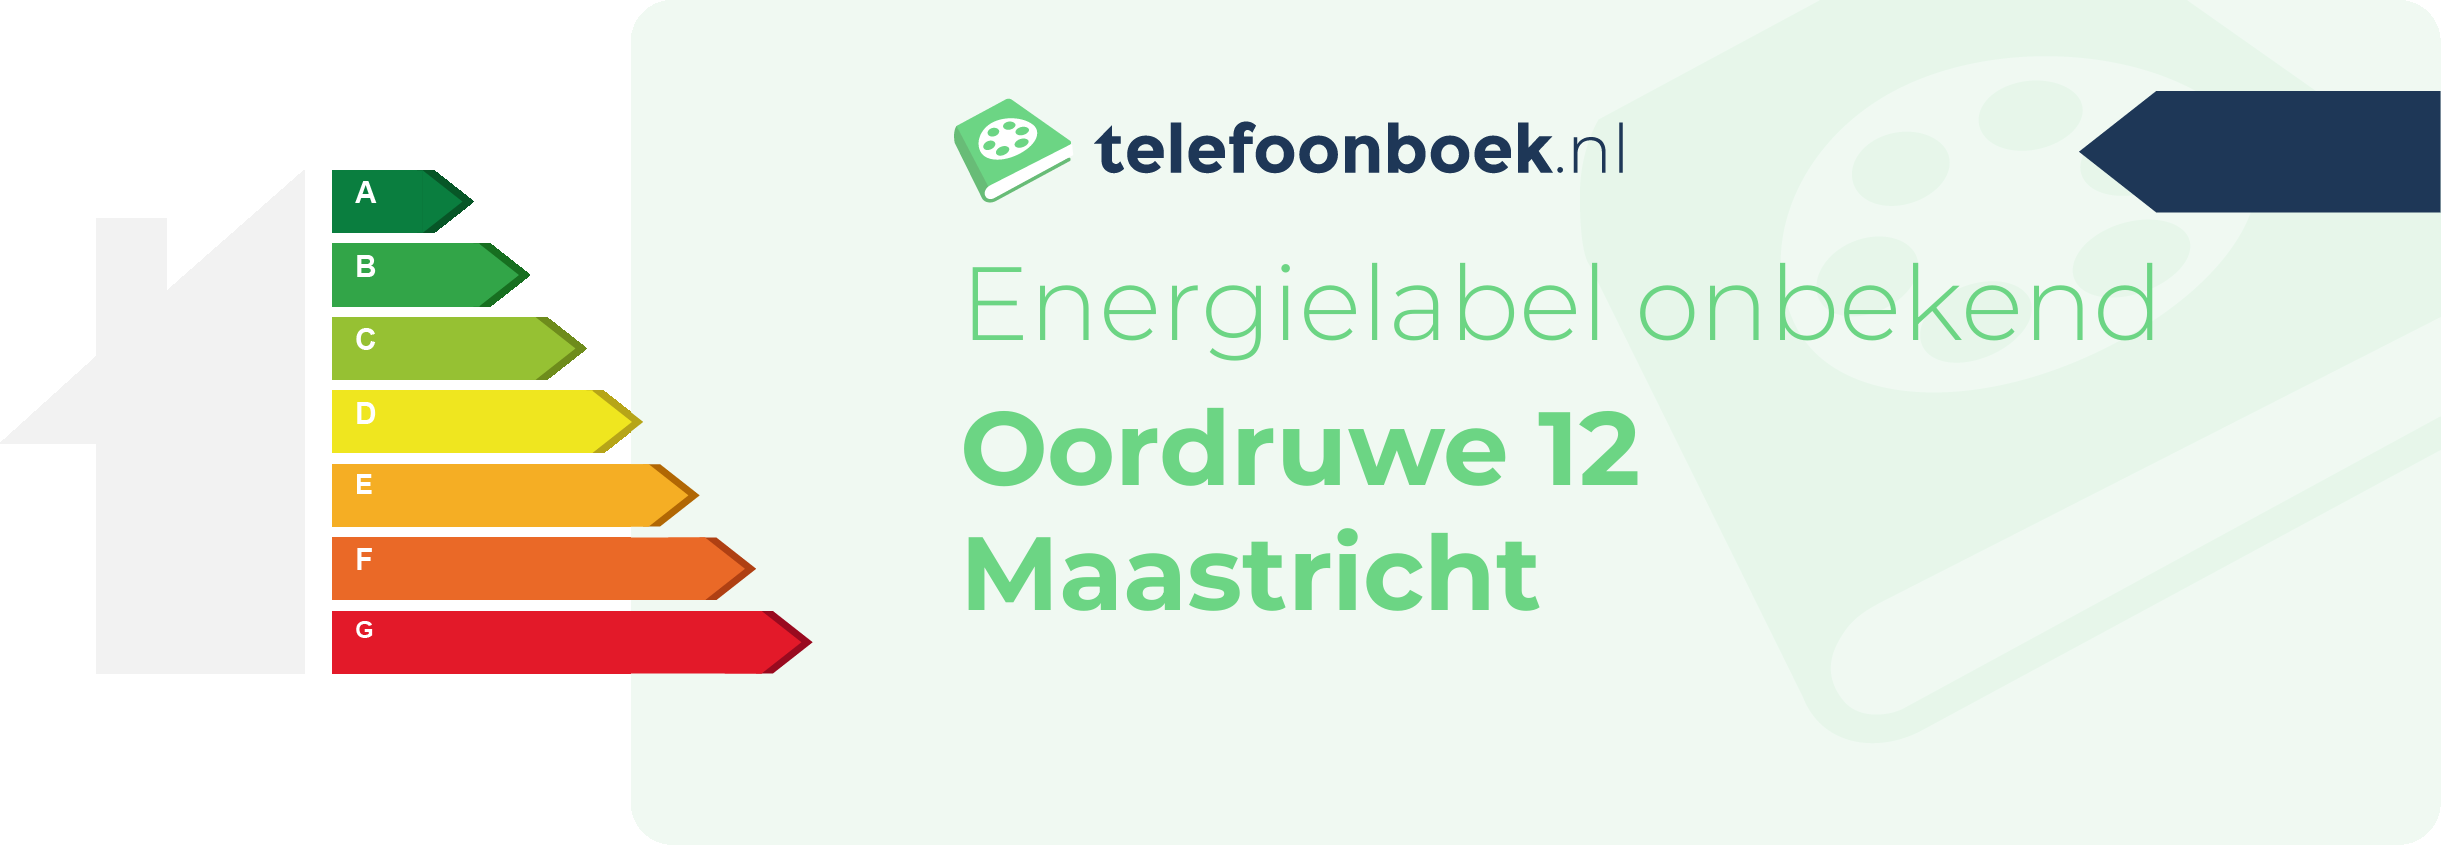 Energielabel Oordruwe 12 Maastricht